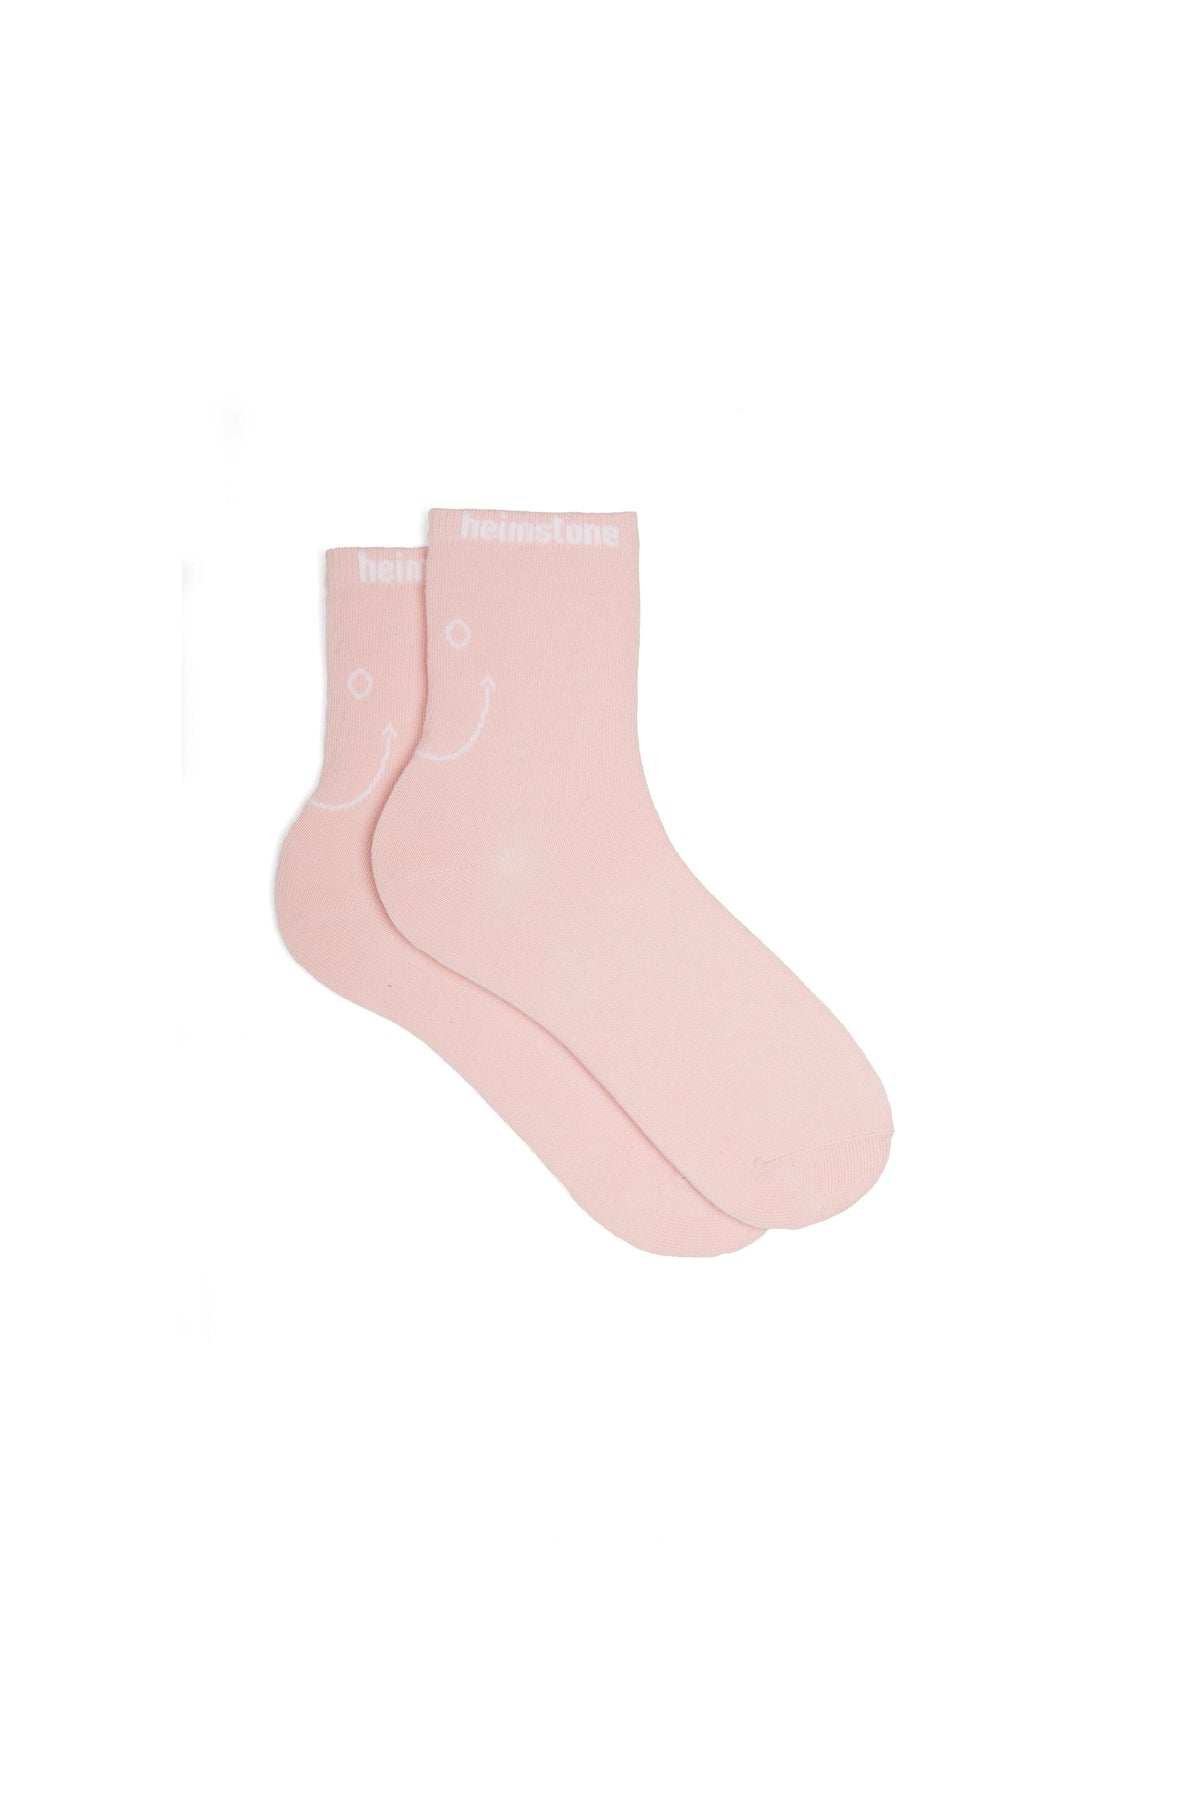 Ankle socks in Pink Smiley | Heimstone